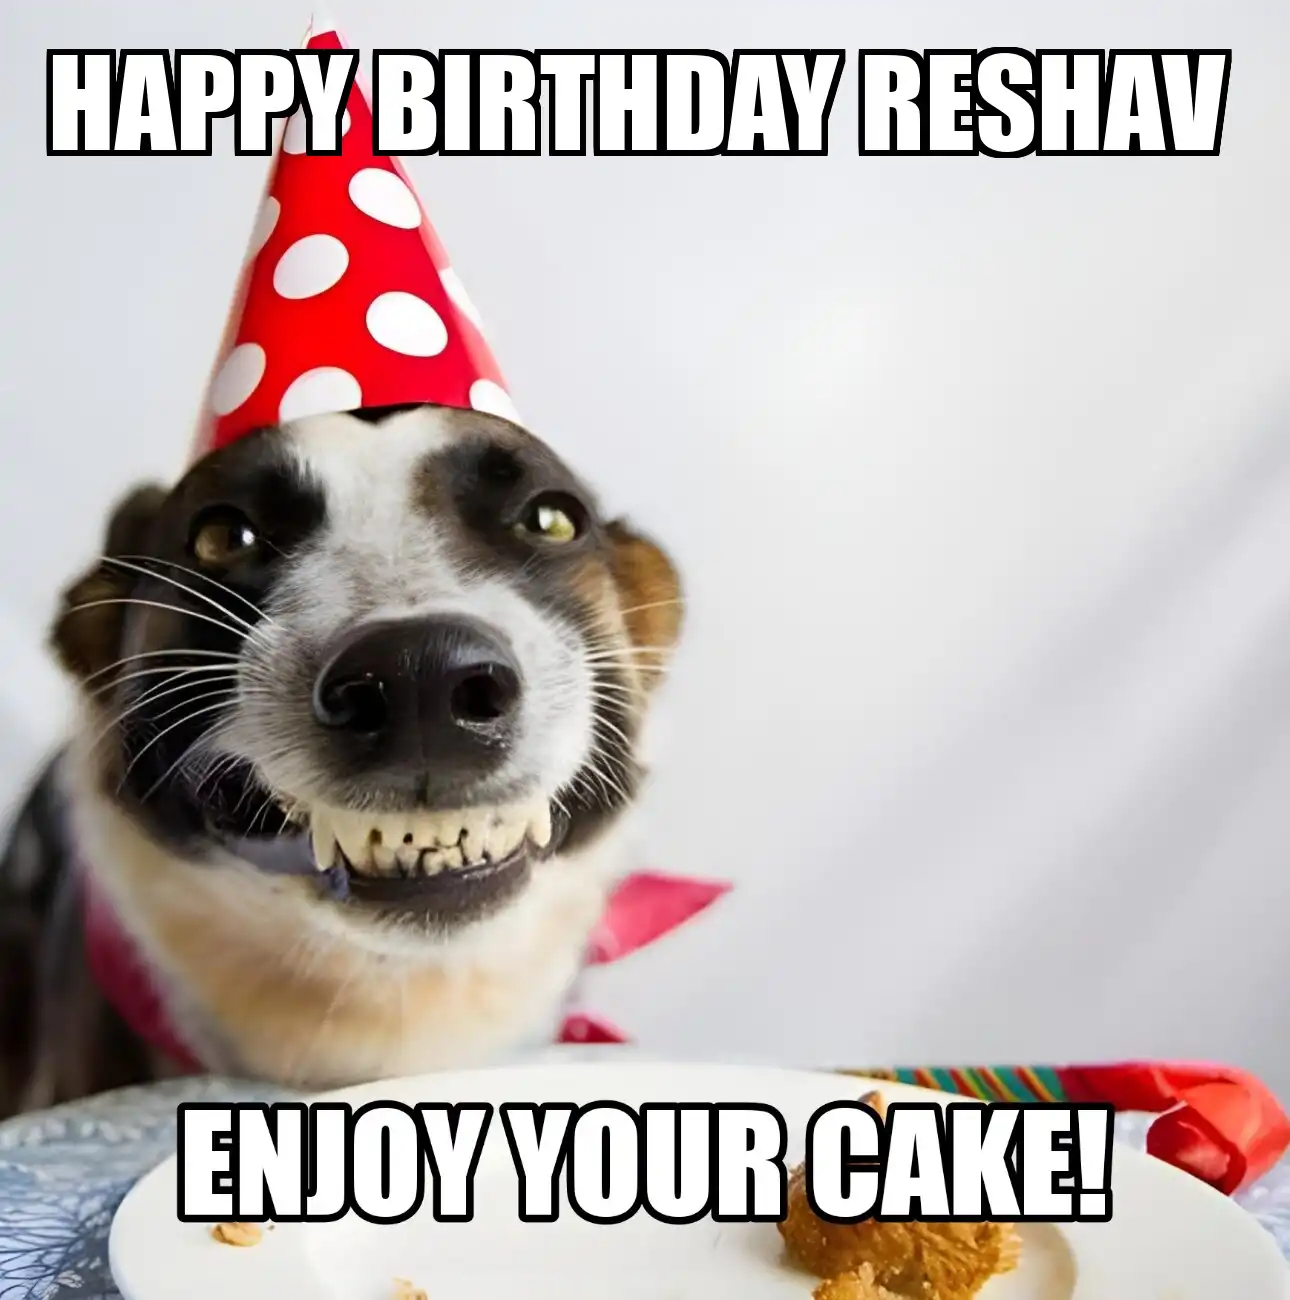 Happy Birthday Reshav Enjoy Your Cake Dog Meme